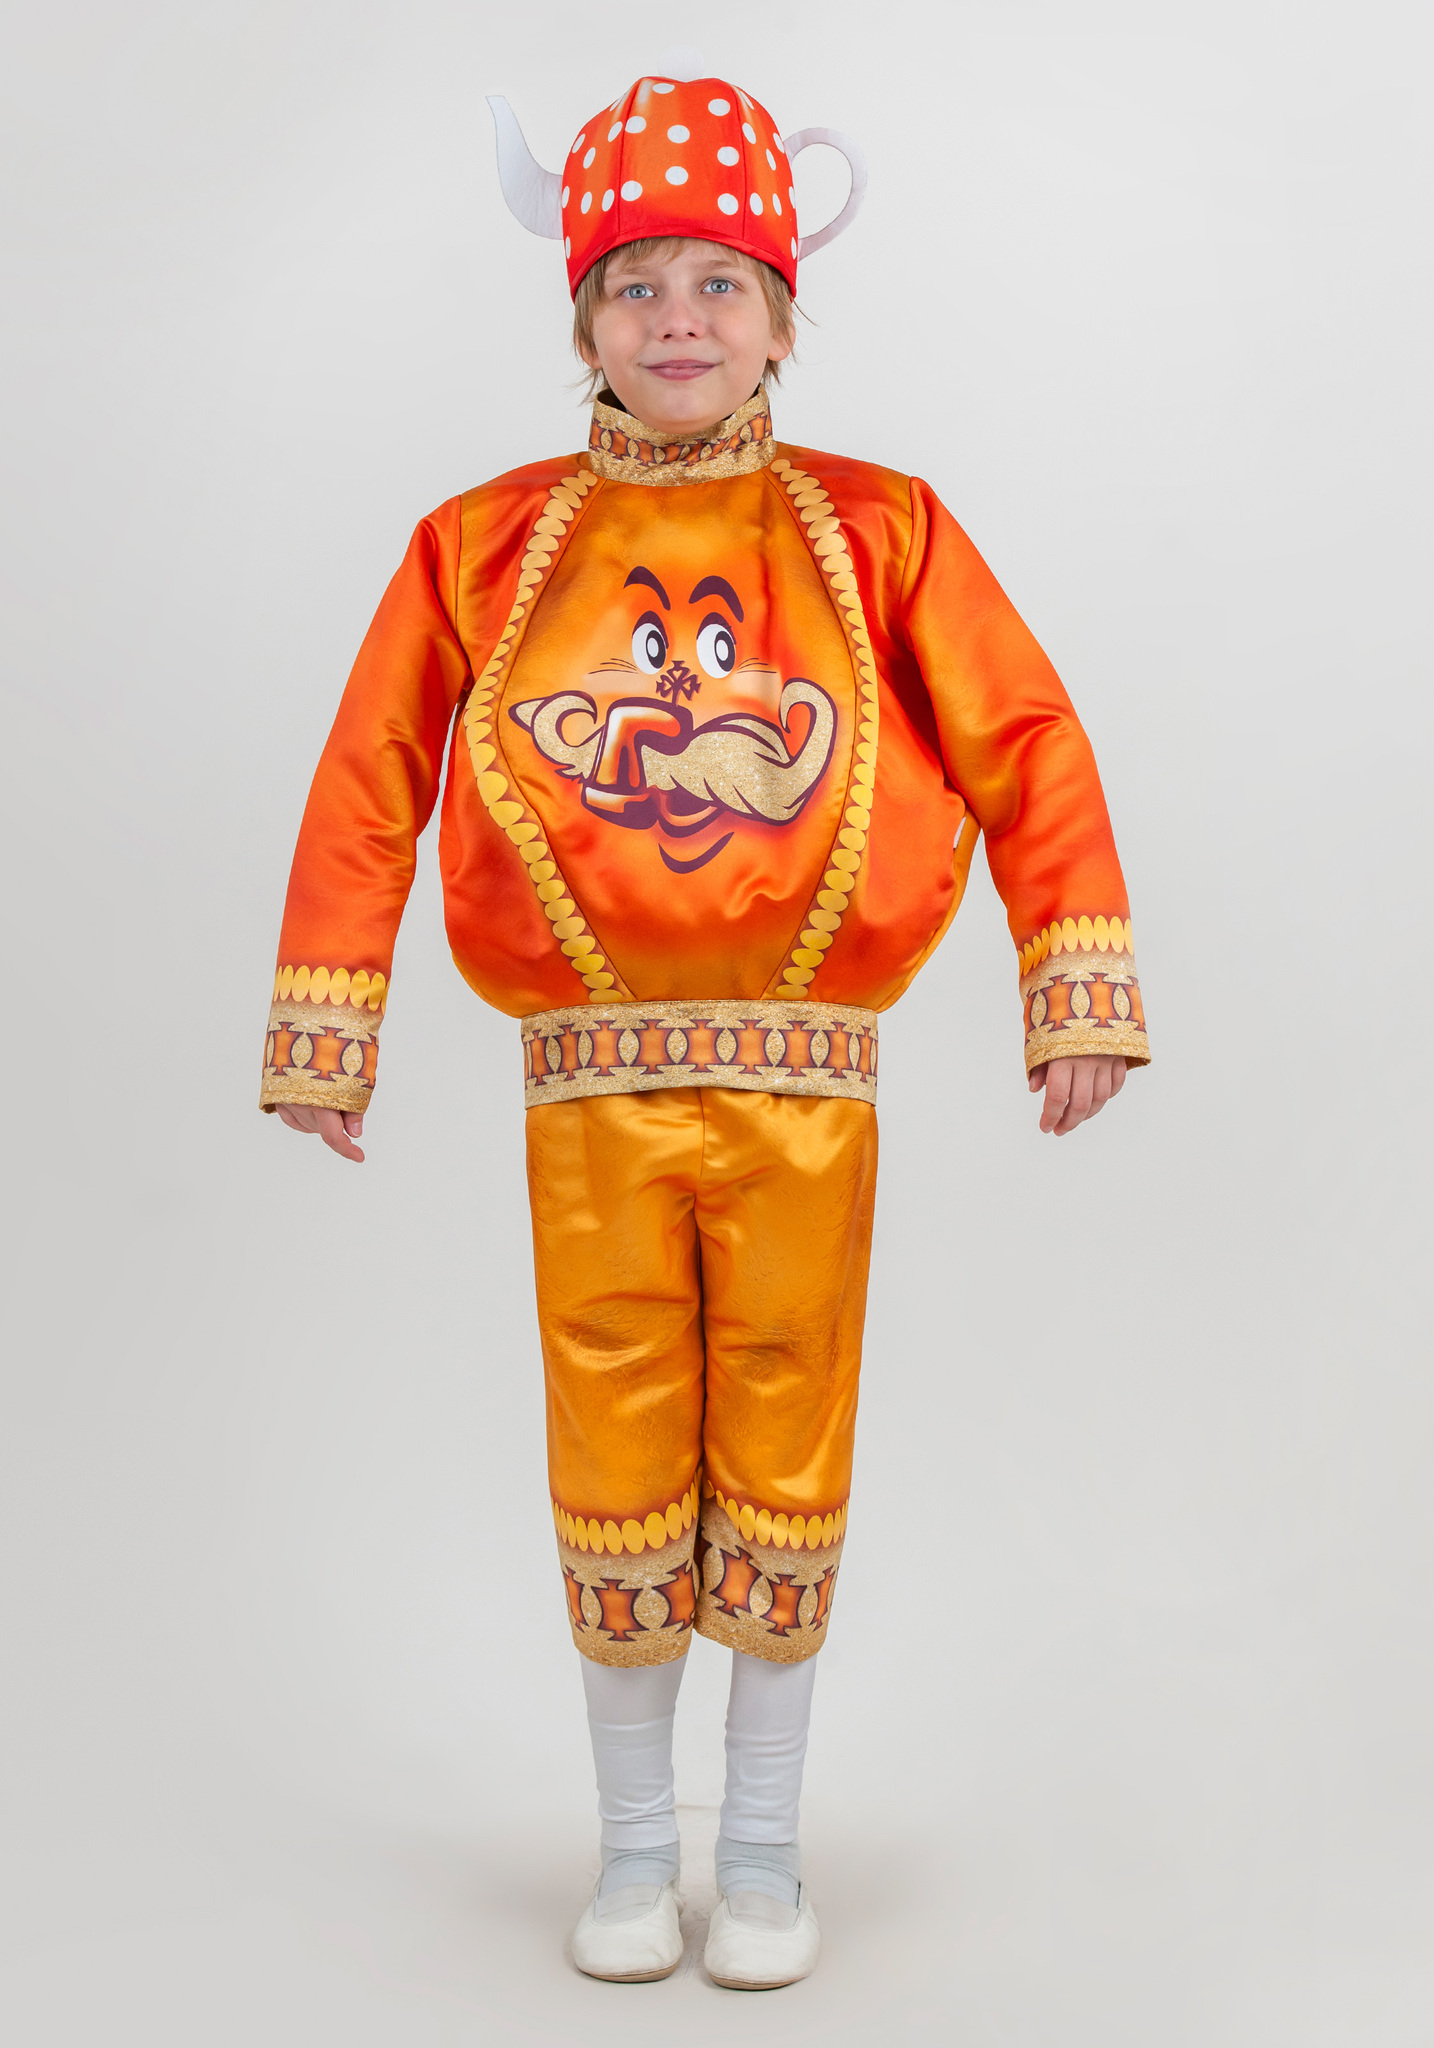 Детский карнавальный костюм: купить или сшить своими руками?